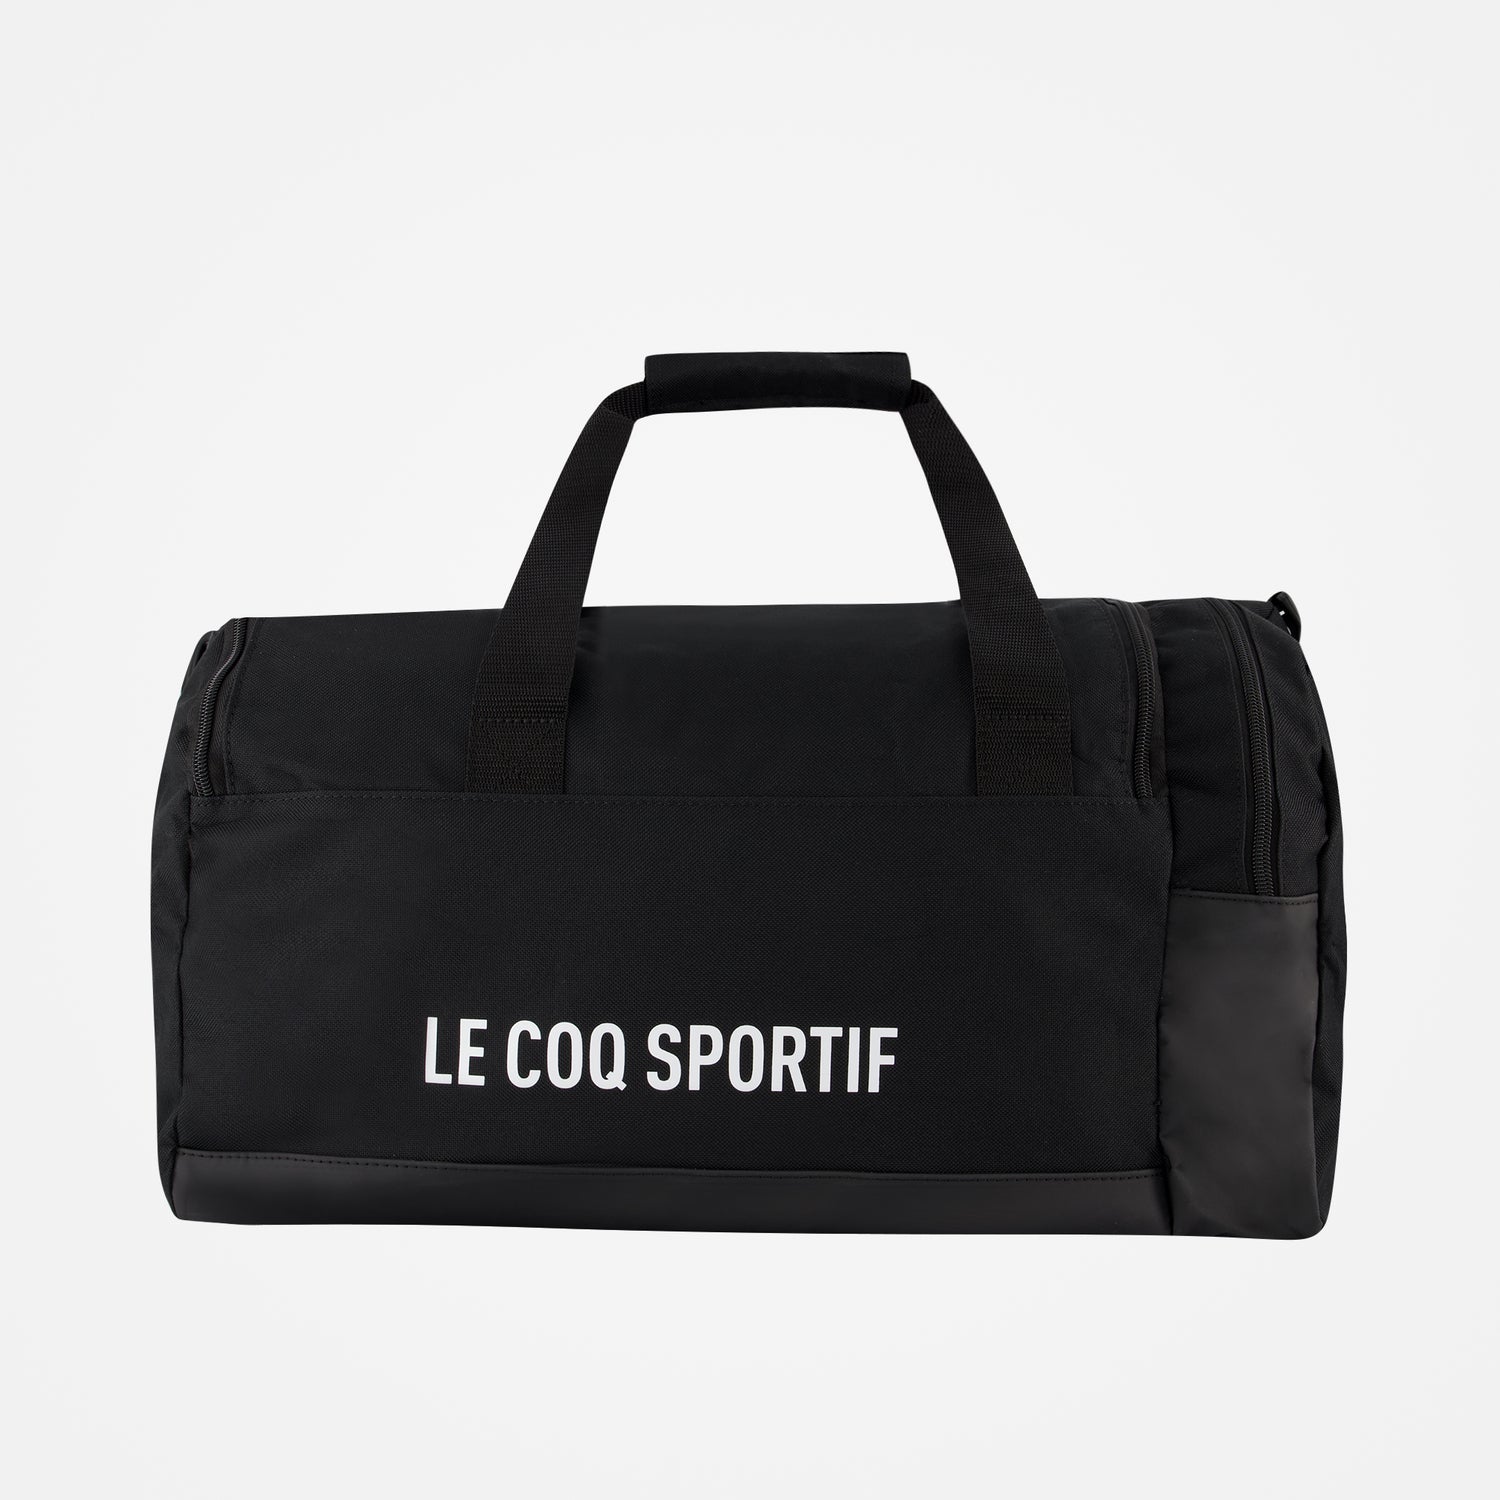 2020927-TRAINING Sportbag S/M black | Sac de sport